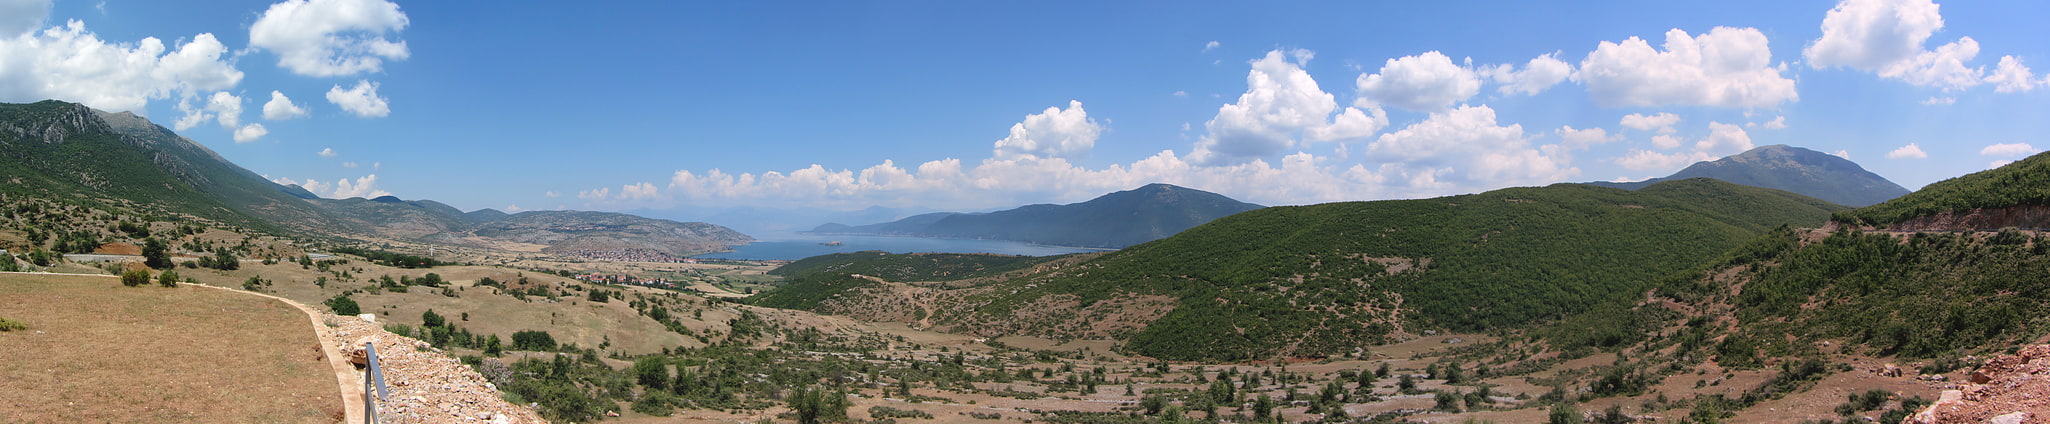 Parc national de Prespa, Albanie